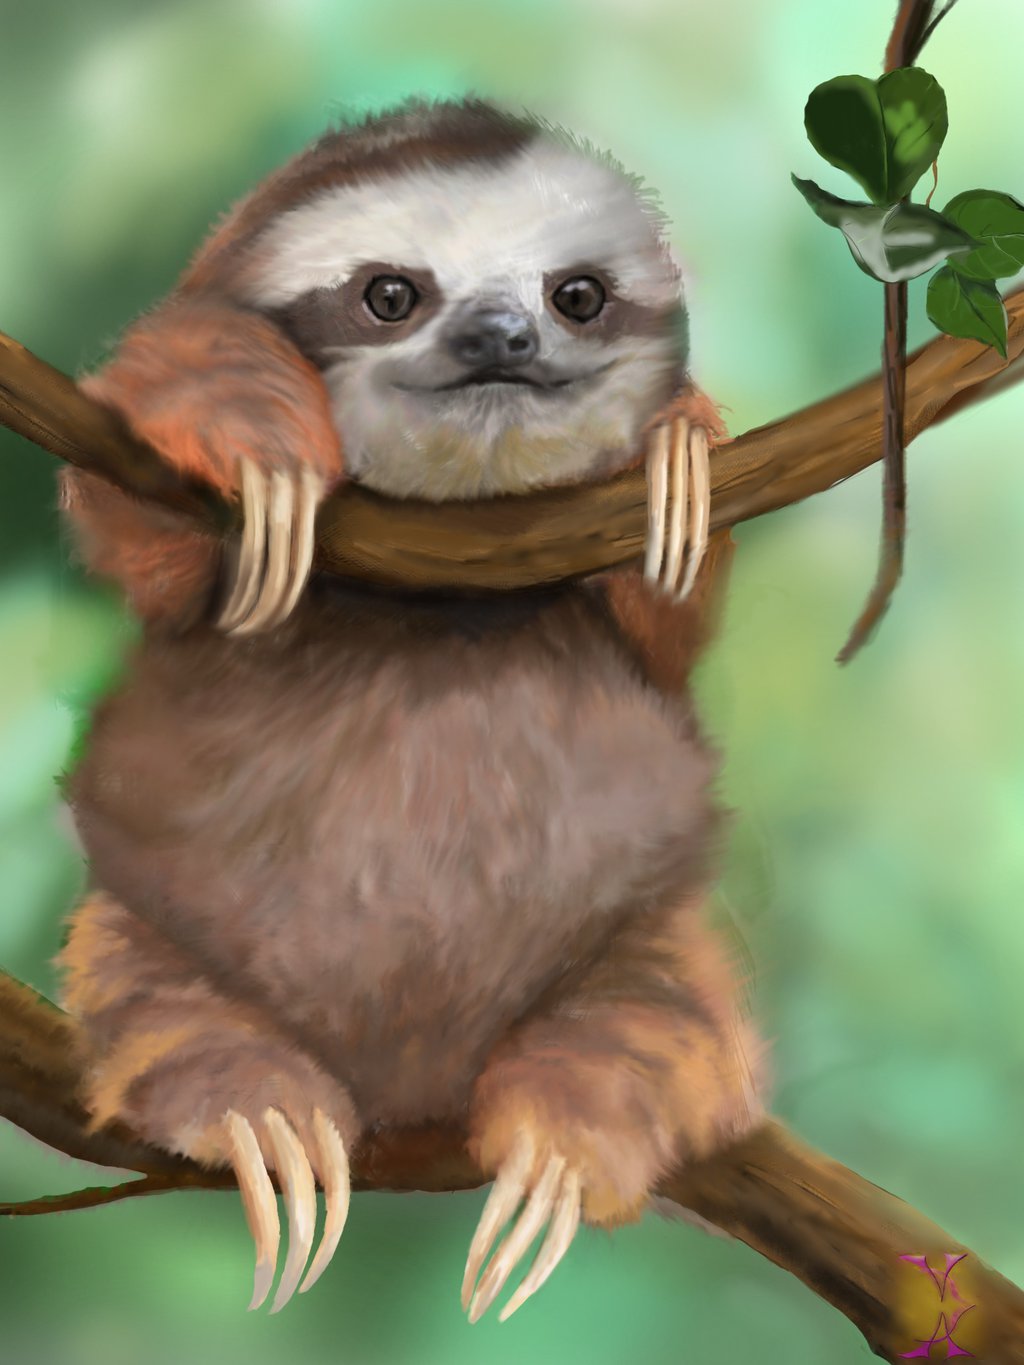 Baby sloth by Violetadams on deviantART